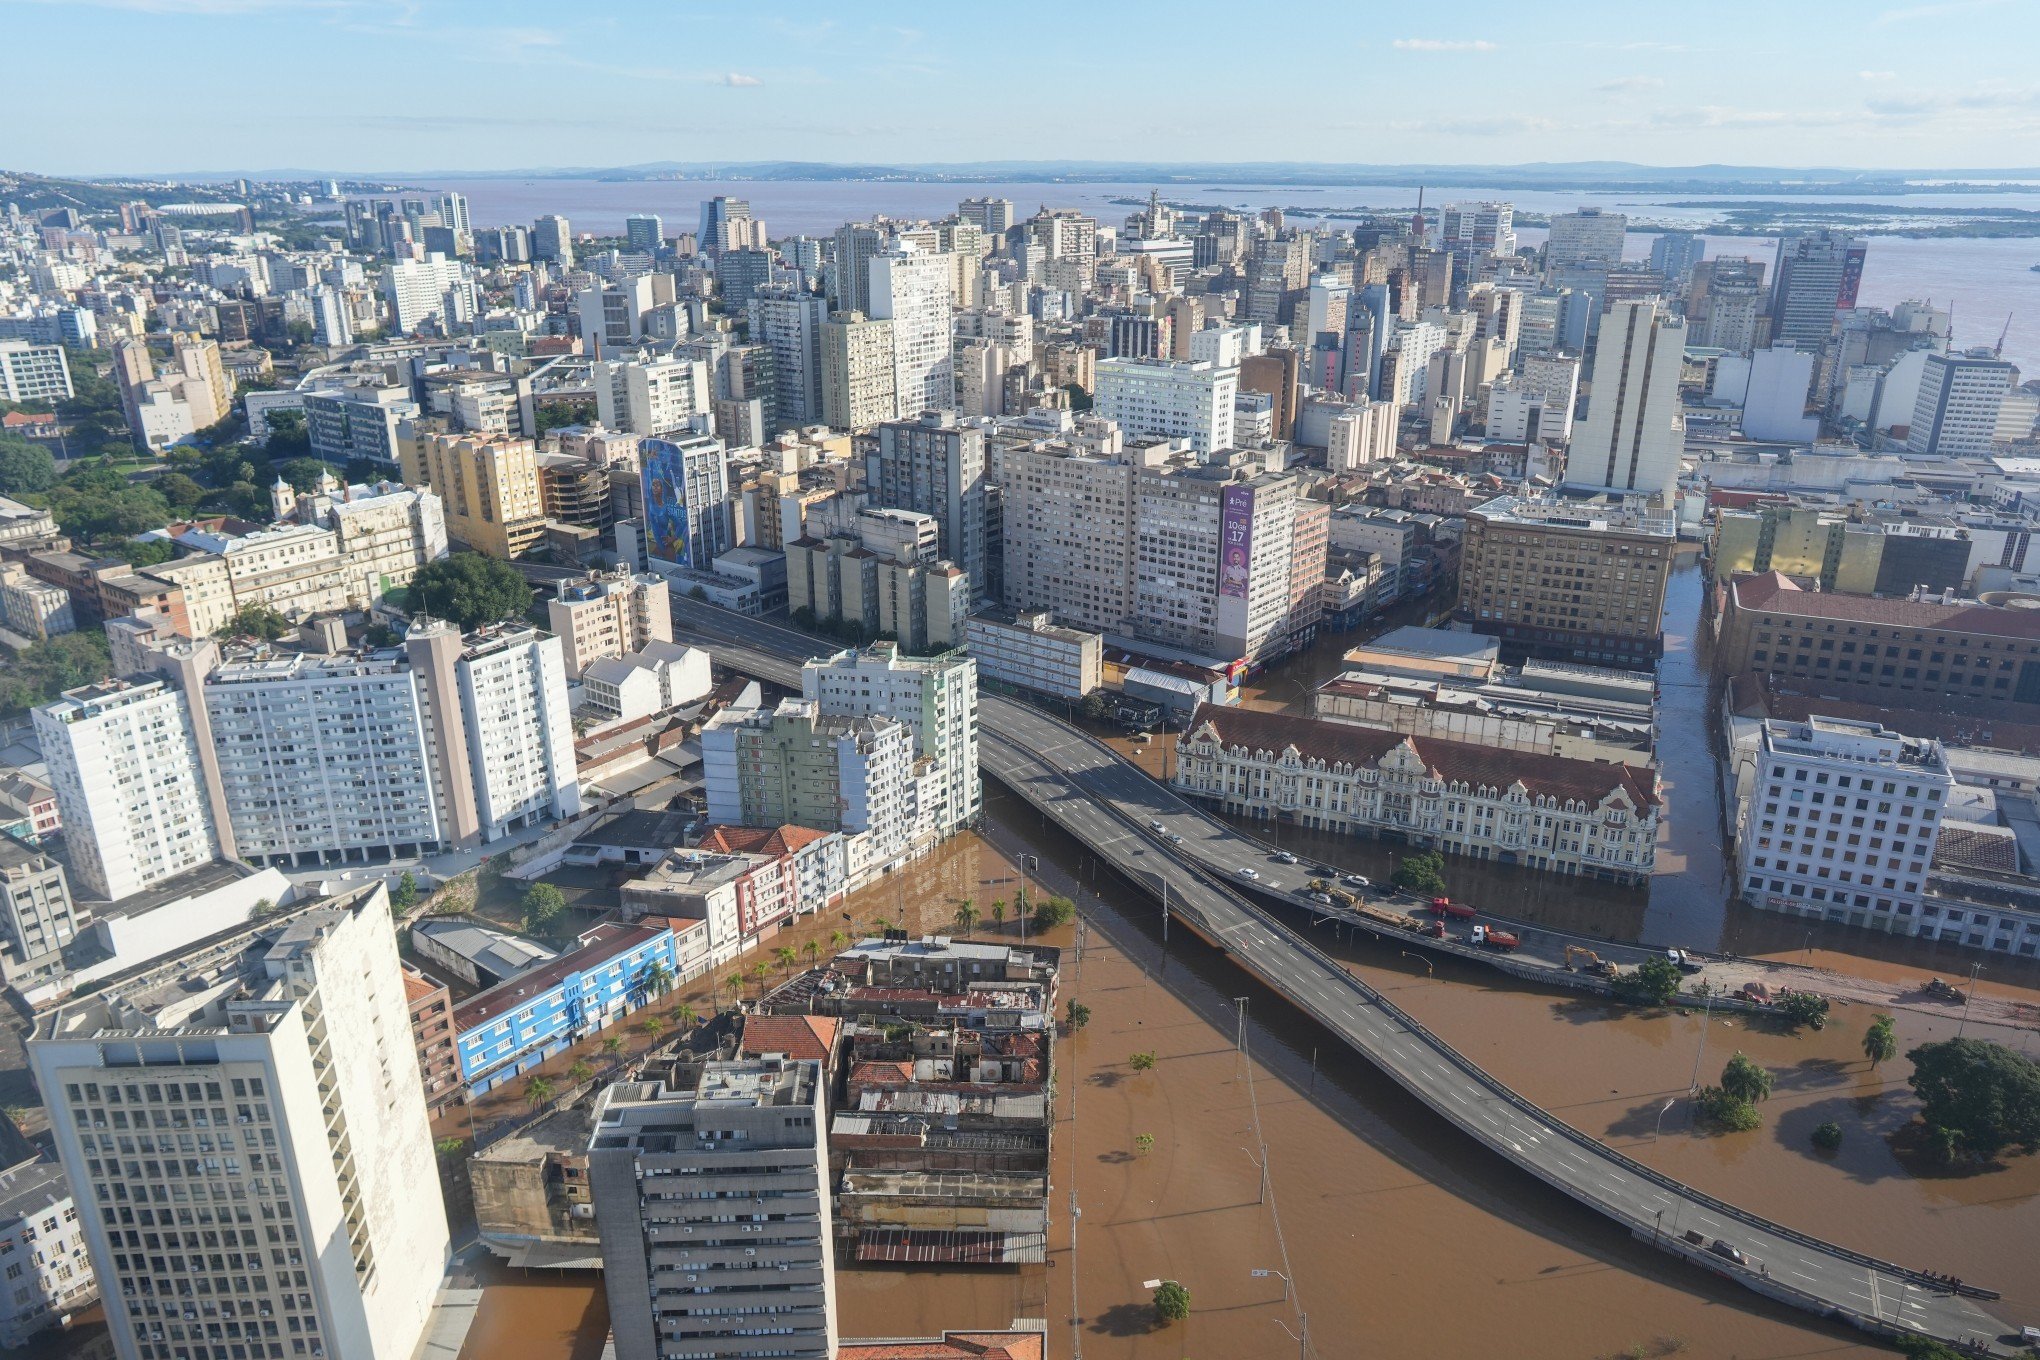 CATÁSTROFE NO RS: Governo federal vai suspender dívida do Rio Grande do Sul por três anos